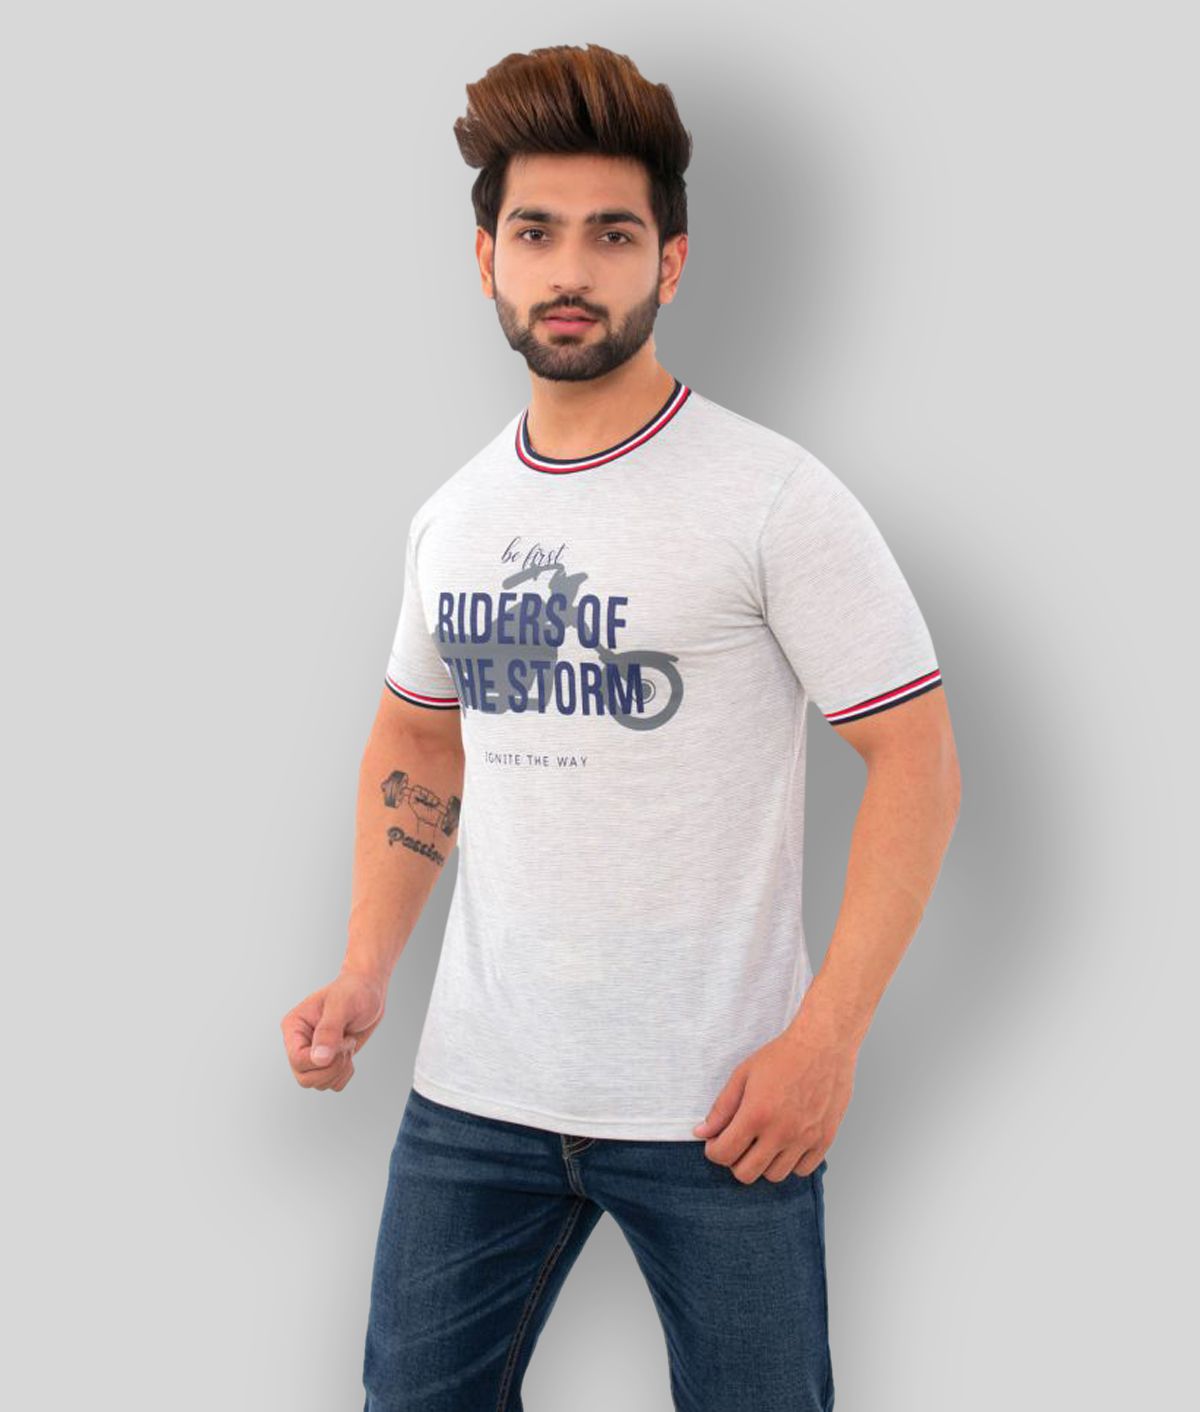     			BISHOPCOTTON - White Cotton Blend Regular Fit  Men's T-Shirt ( Pack of 1 )